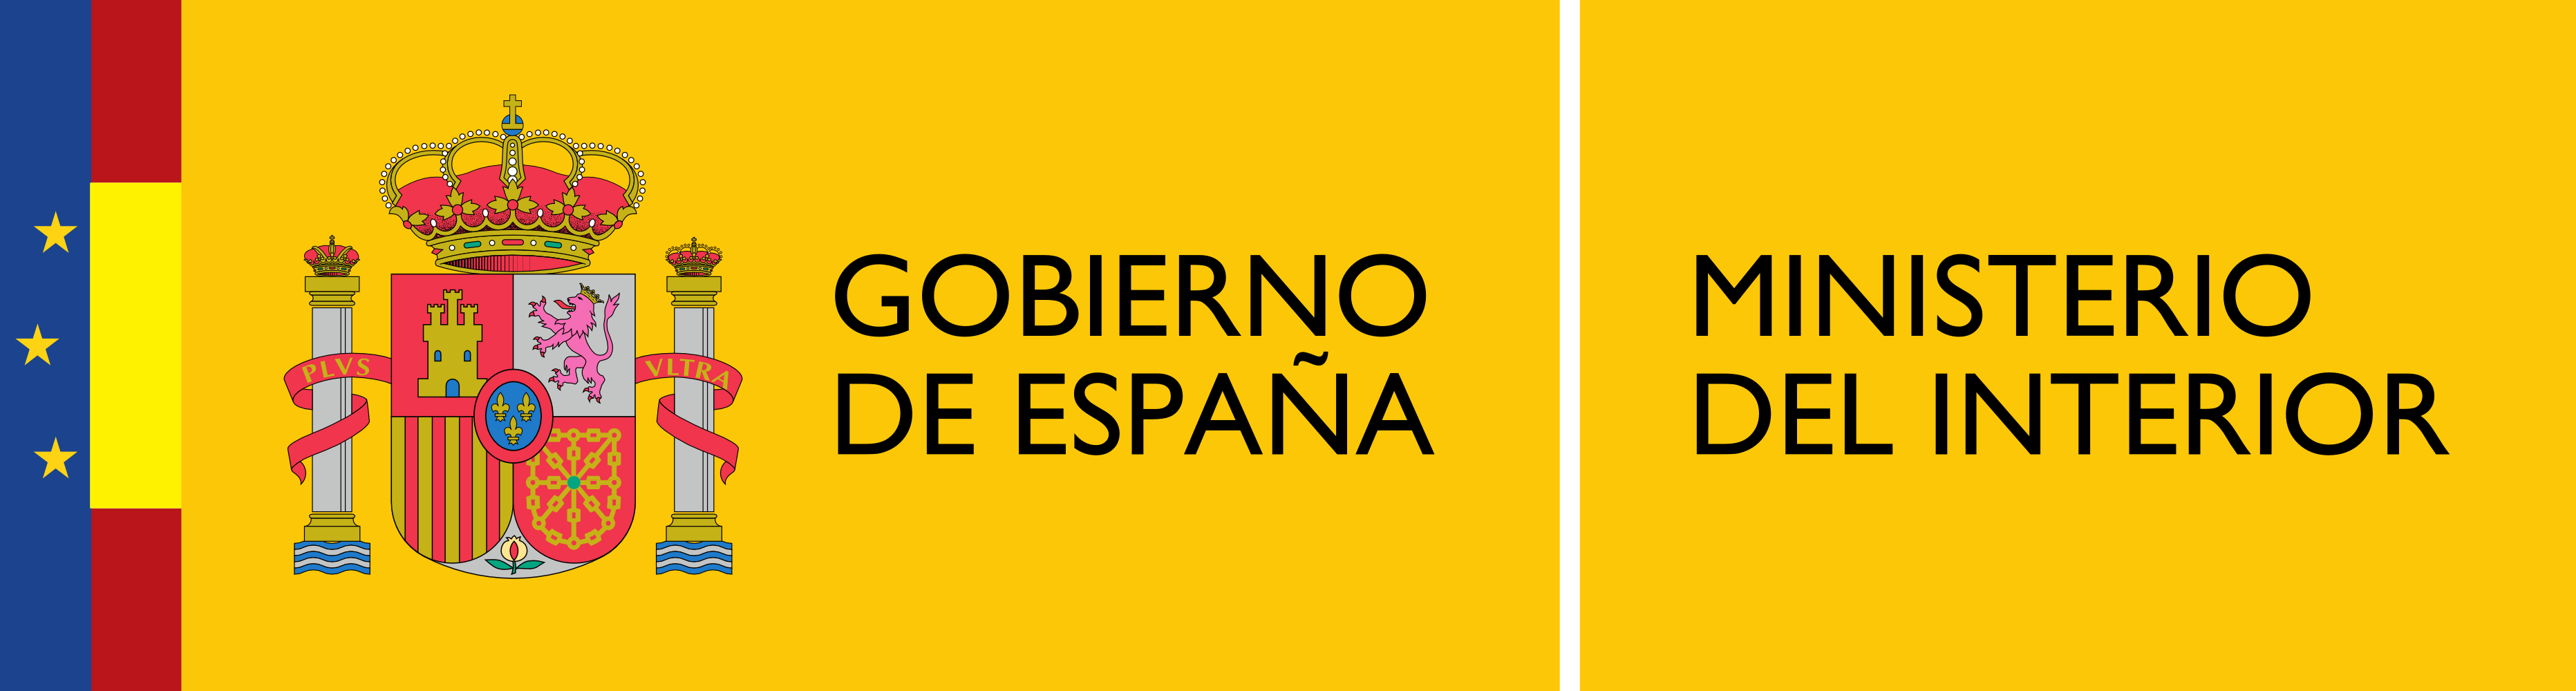 Logotipo_del_Ministerio_del_Interior